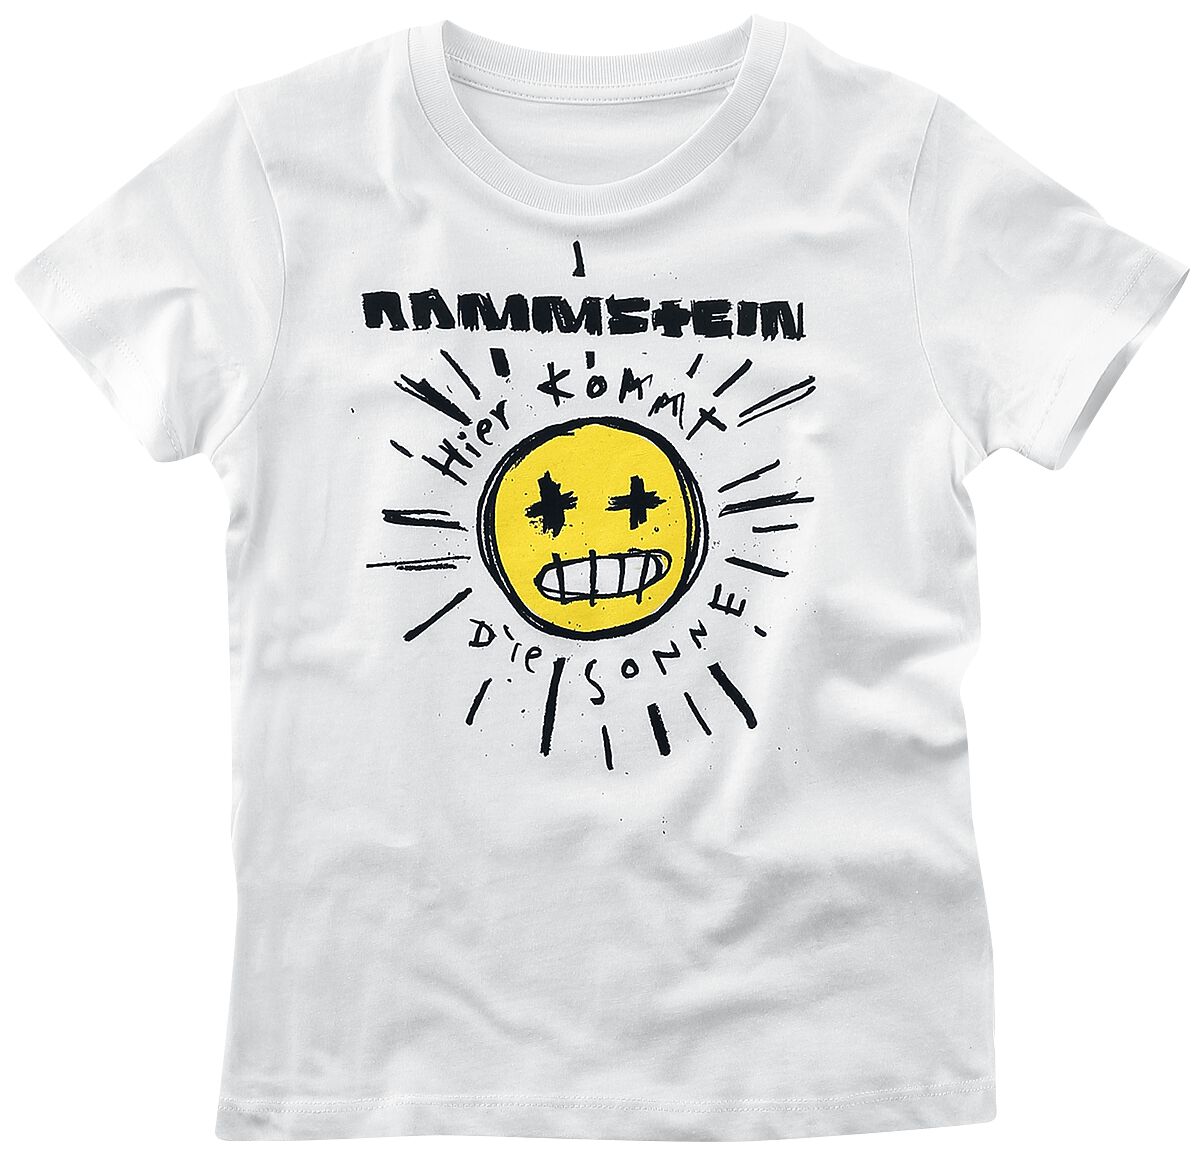 Rammstein T-Shirt für Kleinkinder - Kids - Sonne - für Mädchen & Jungen - weiß  - Lizenziertes Merchandise!